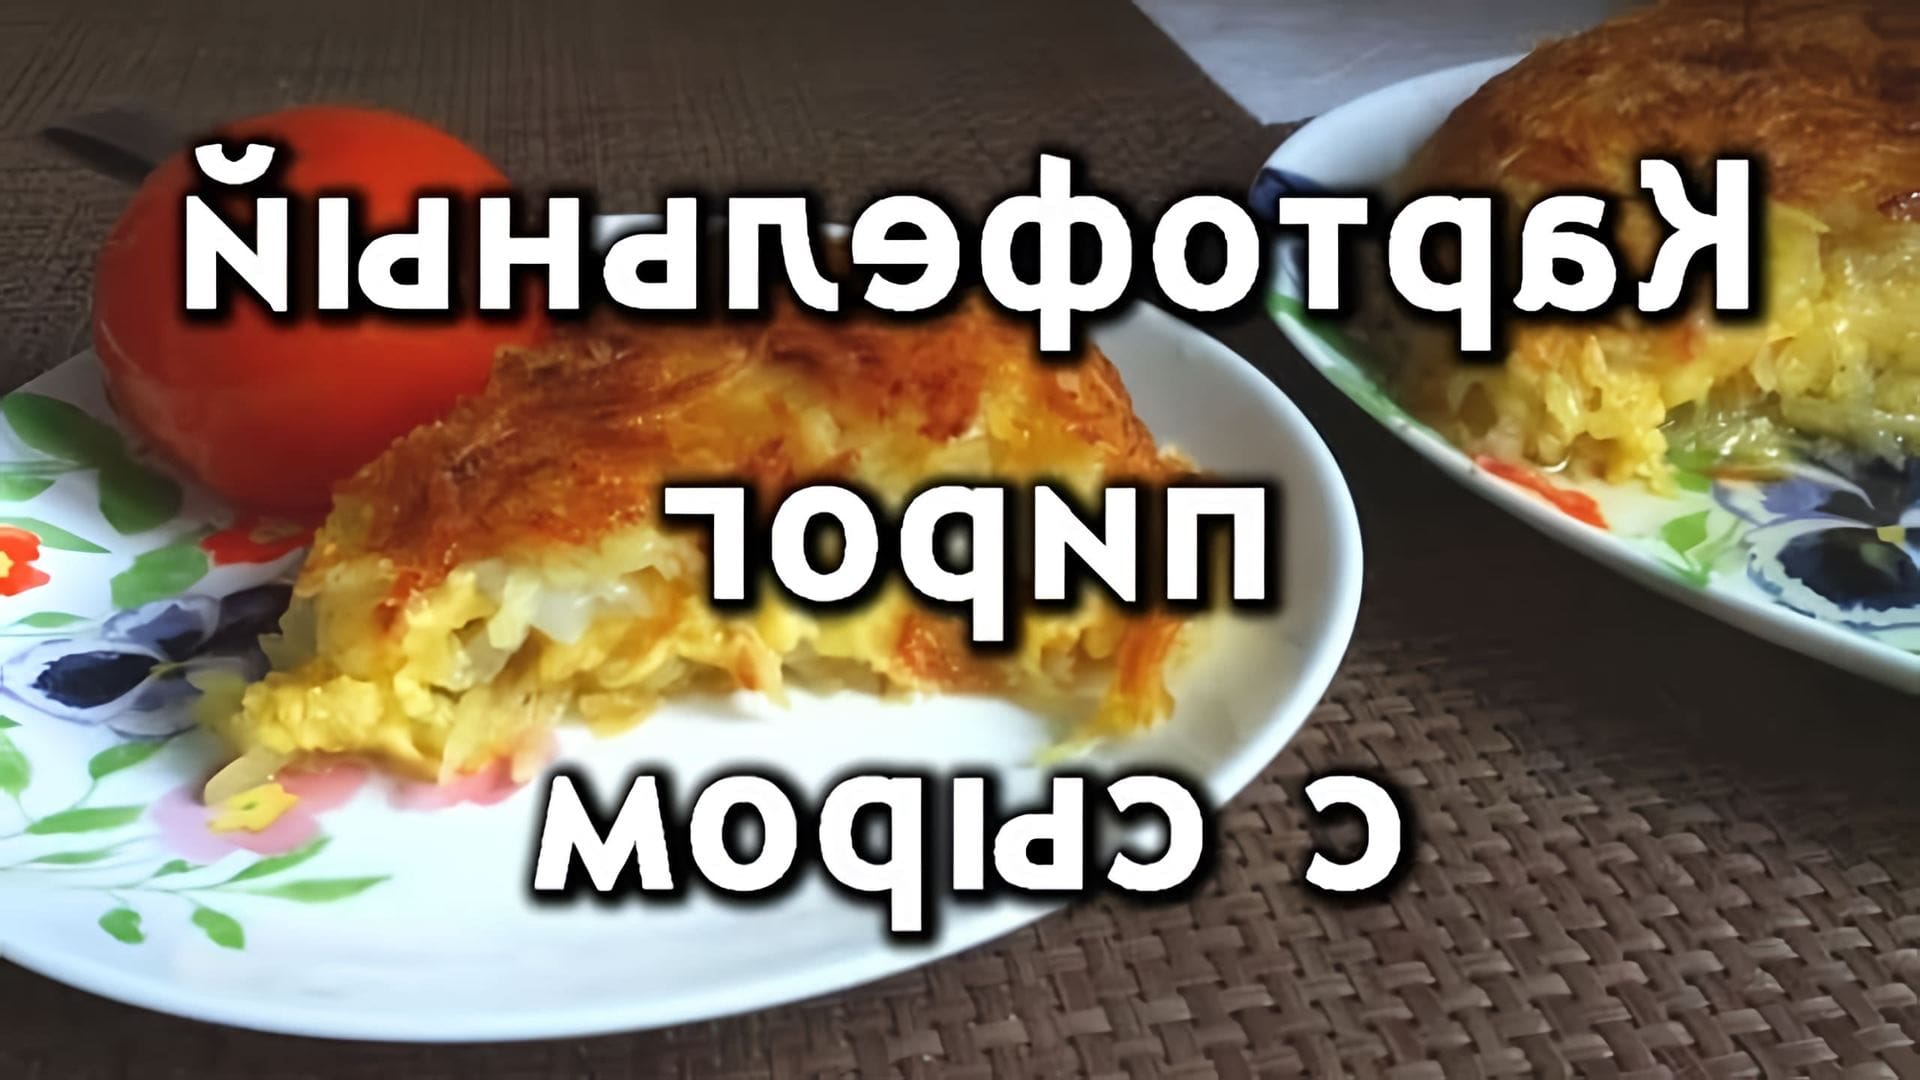 В этом видео демонстрируется рецепт картофельного пирога с сыром